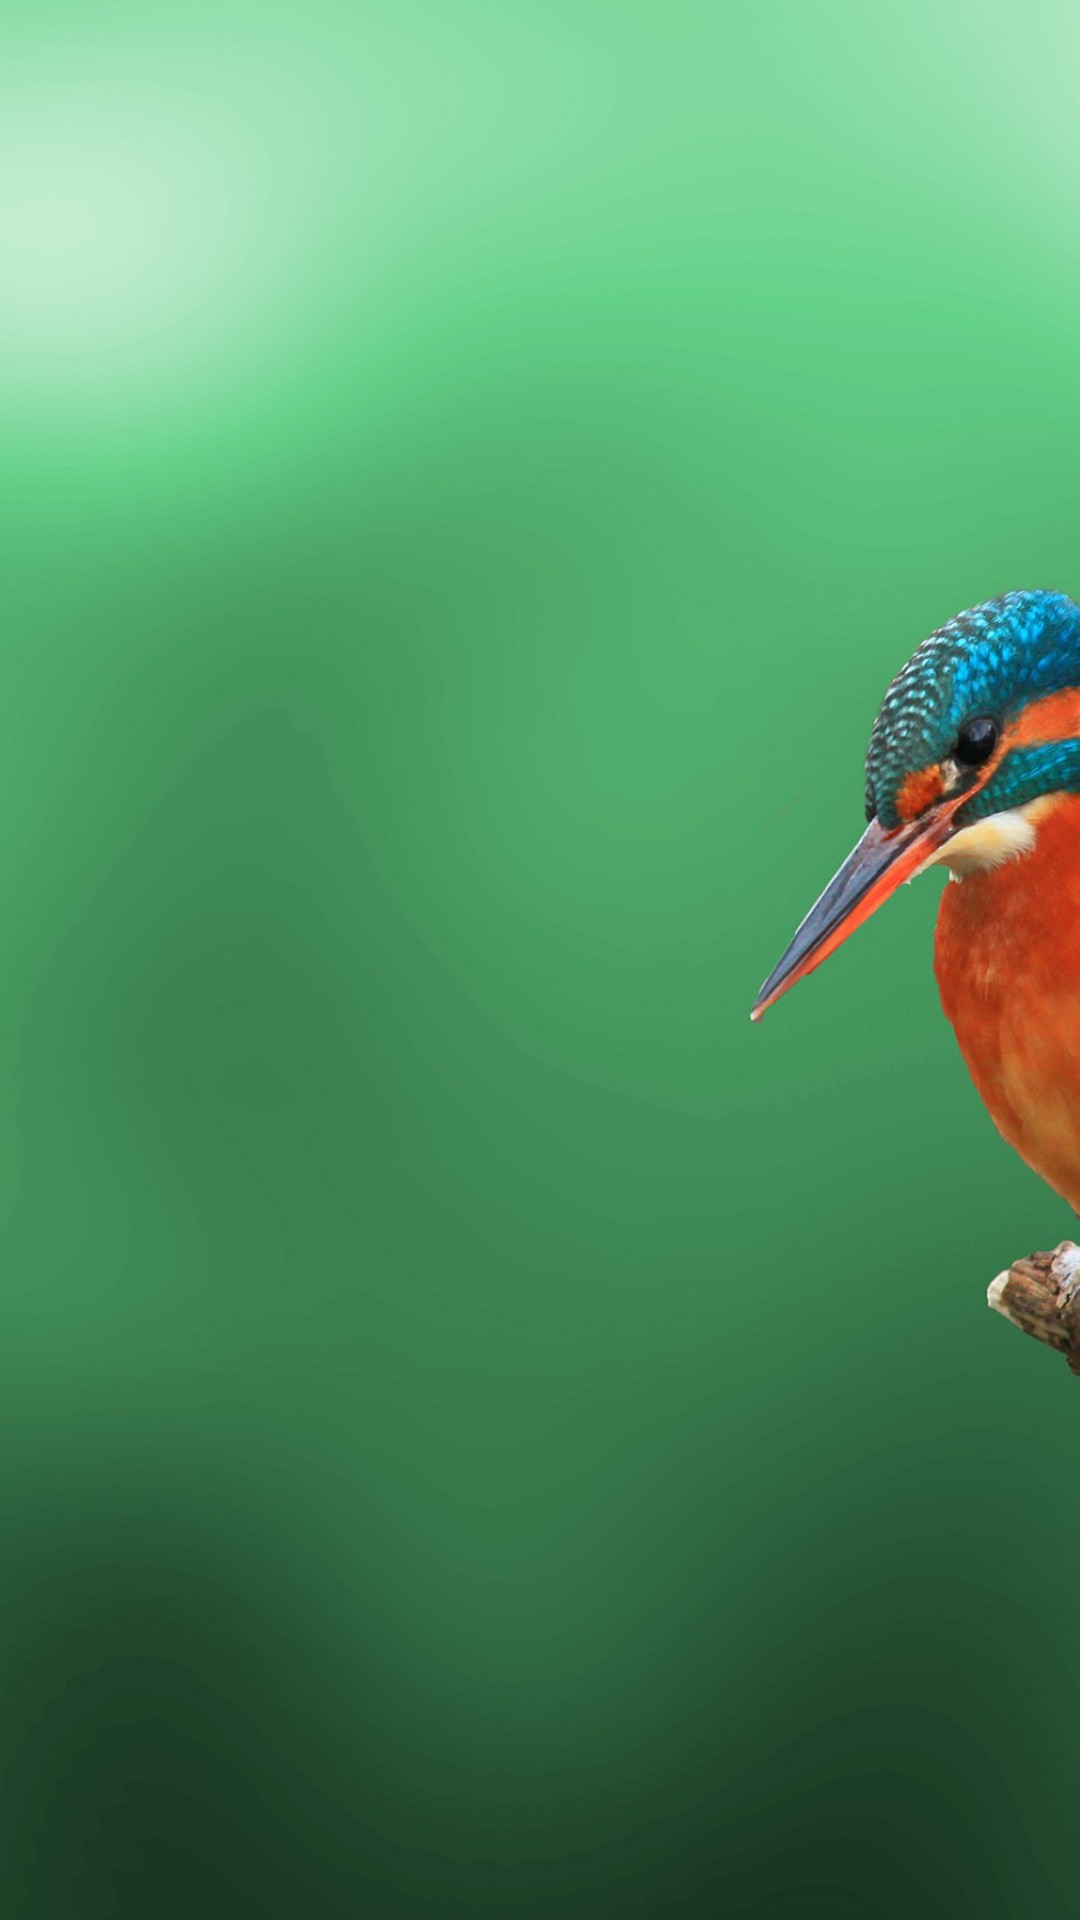 Kingfisher Bird: Hãy chiêm ngưỡng vẻ đẹp tuyệt vời của con chim bồ câu đầu xanh. Với bản sắc hoàn toàn khác biệt và tuyệt đẹp, chúng ta sẽ được đắm mình trong thế giới hoang dã của con chim kingfisher này.